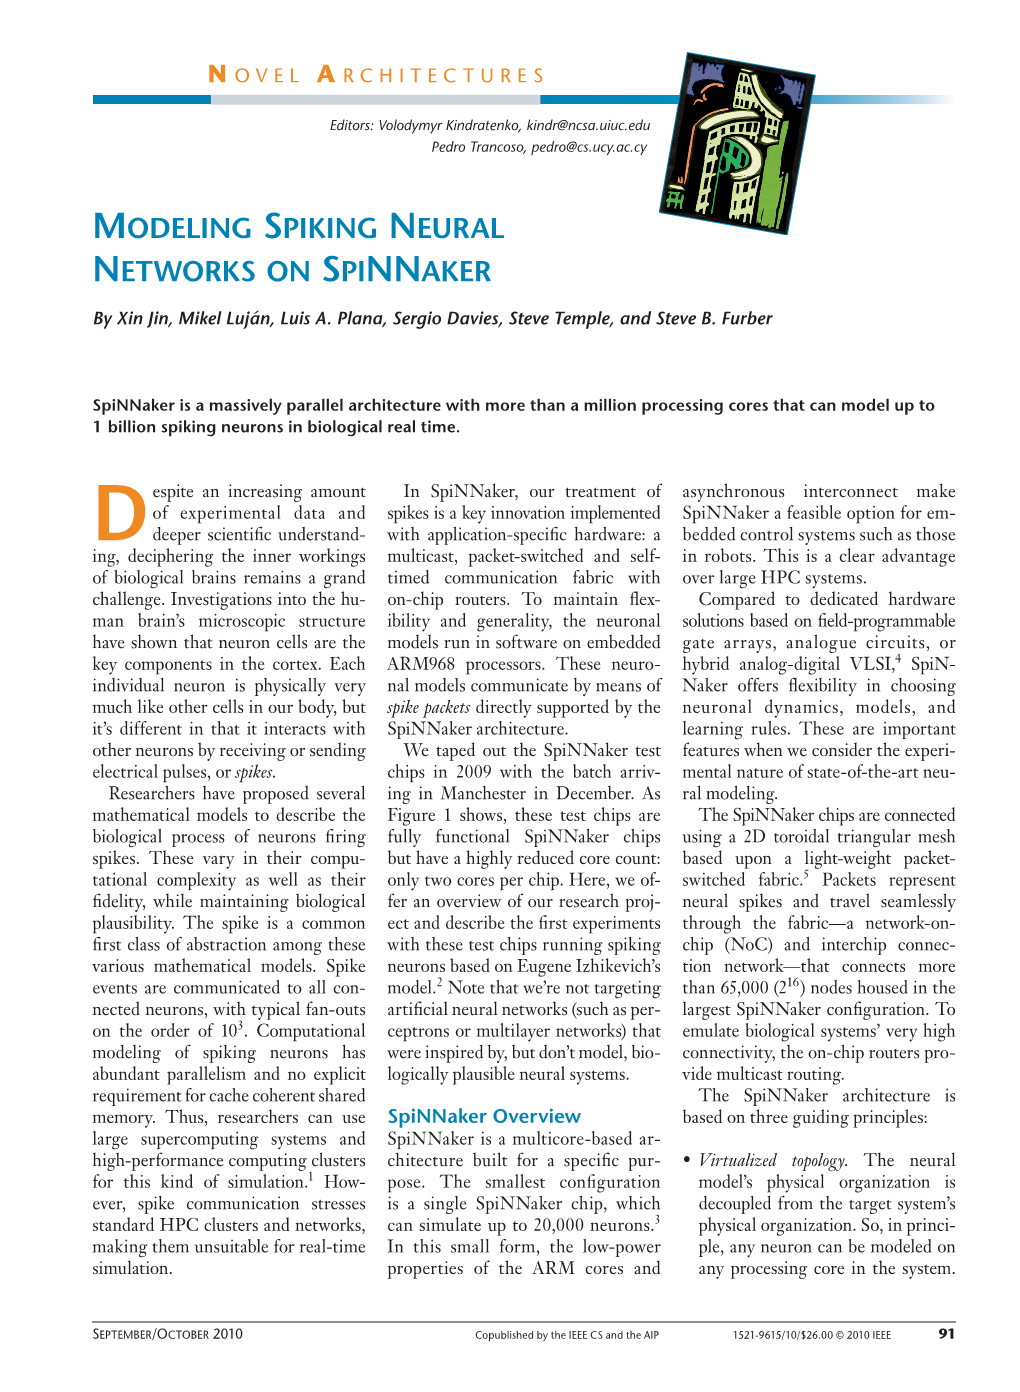 Modeling Spiking Neural Networks on Spinnaker